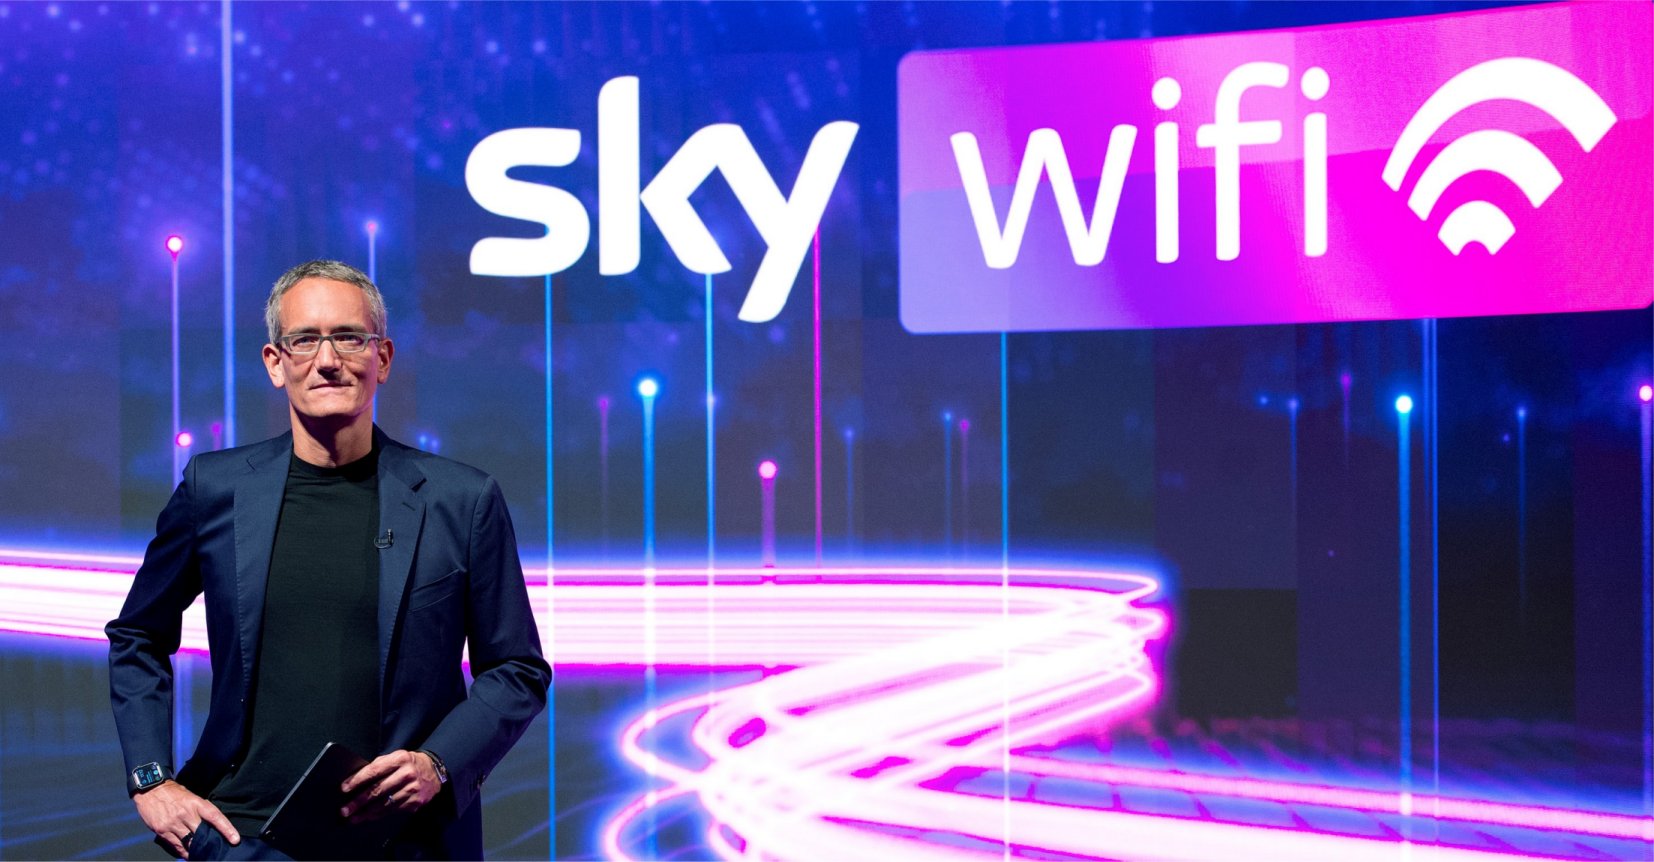 Nasce Sky WiFi, la fibra di Sky che cambia il mondo della connettività